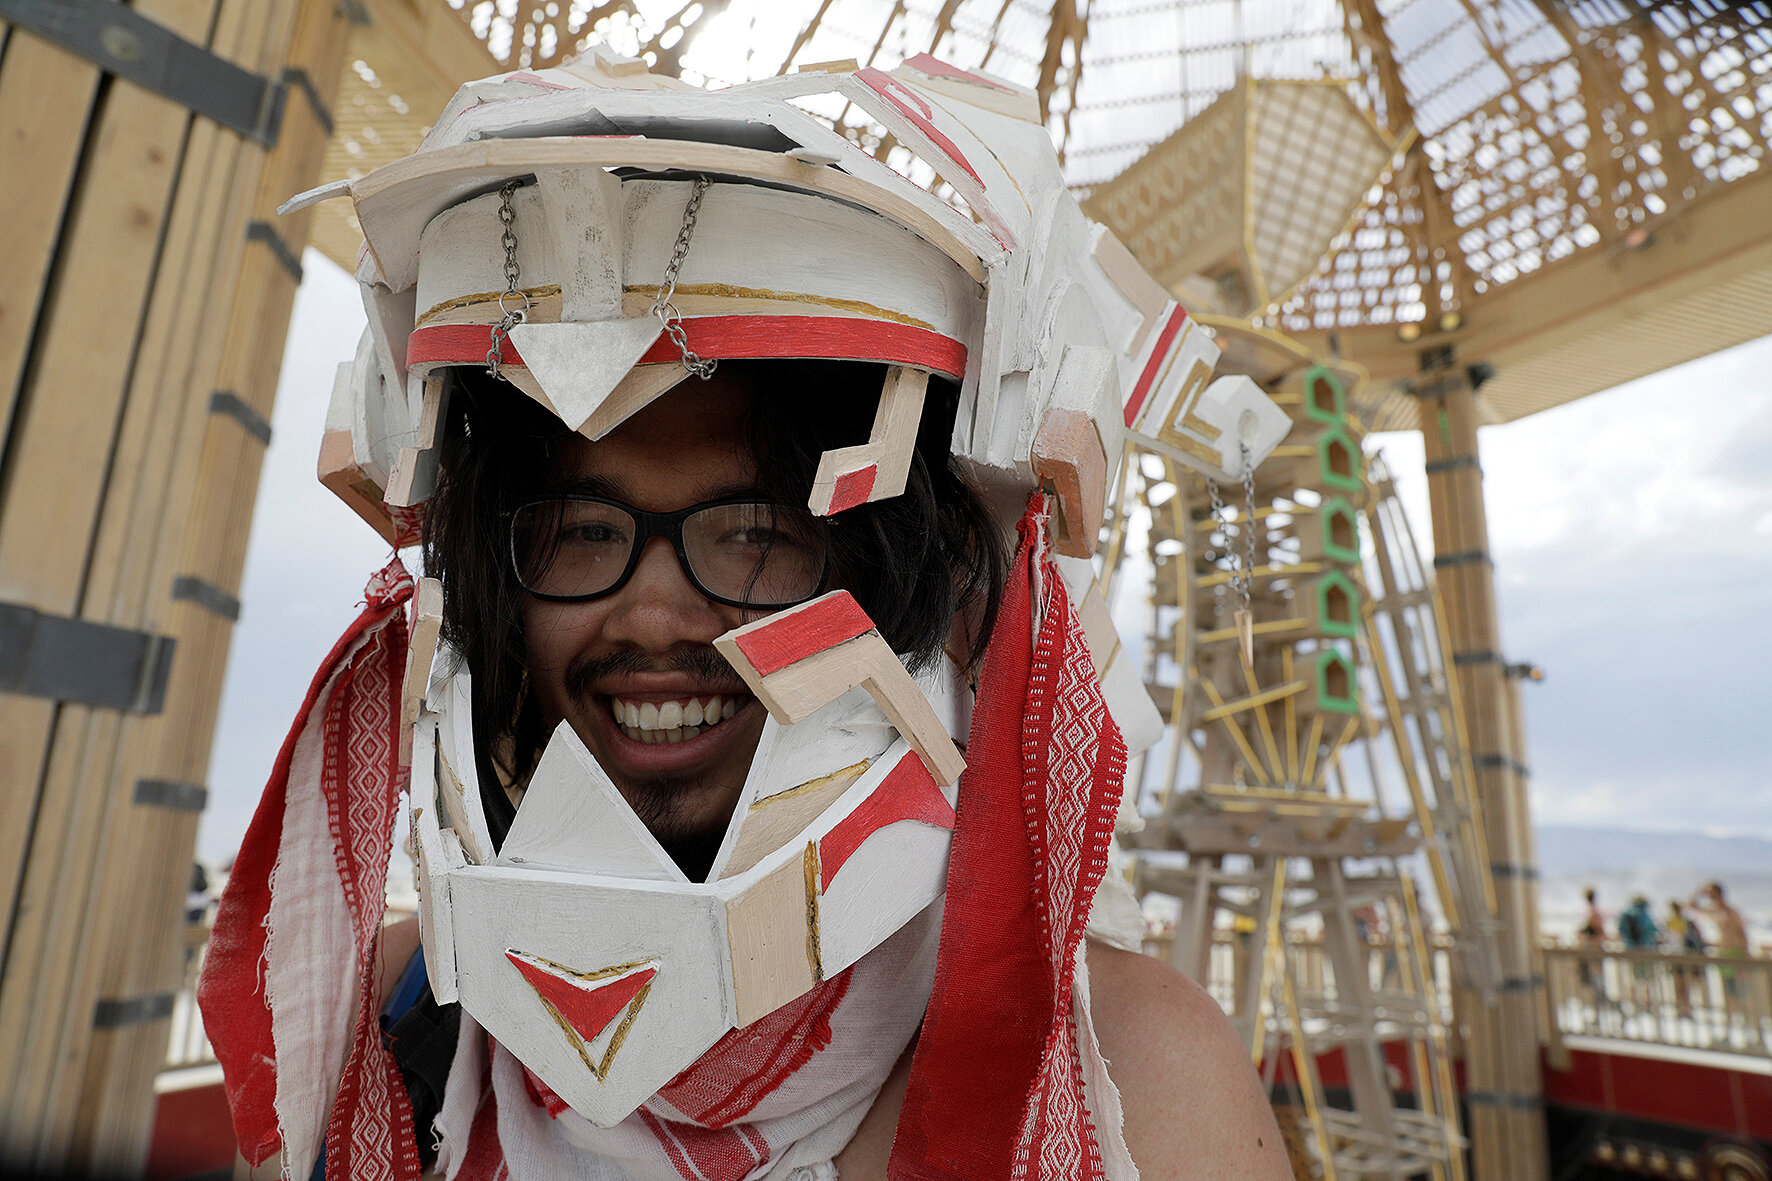 <p>Чунг Хьюн из Южной Дакоты носит шлем, который он создавал в течение трех недель специально для фестиваля</p>

<p>&nbsp;</p>